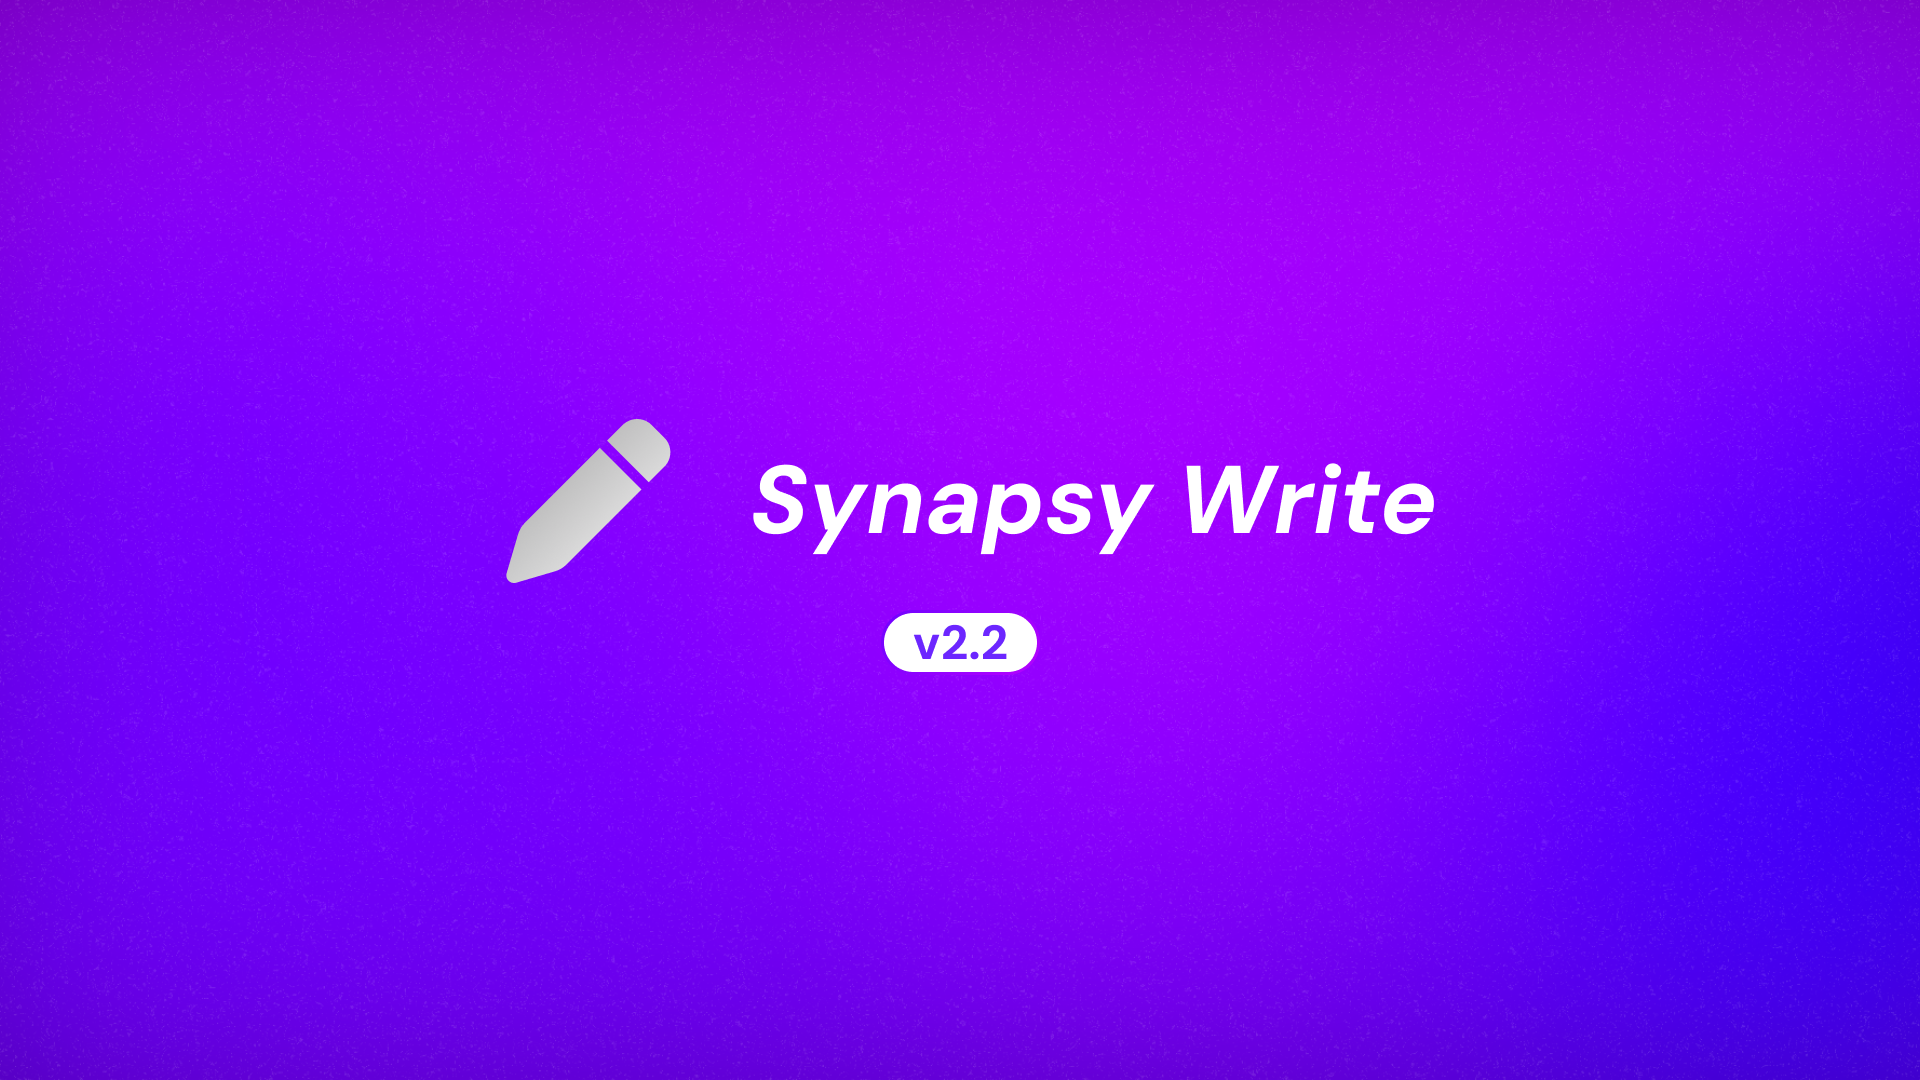 Synapsy Write v2.2.0 Changelog